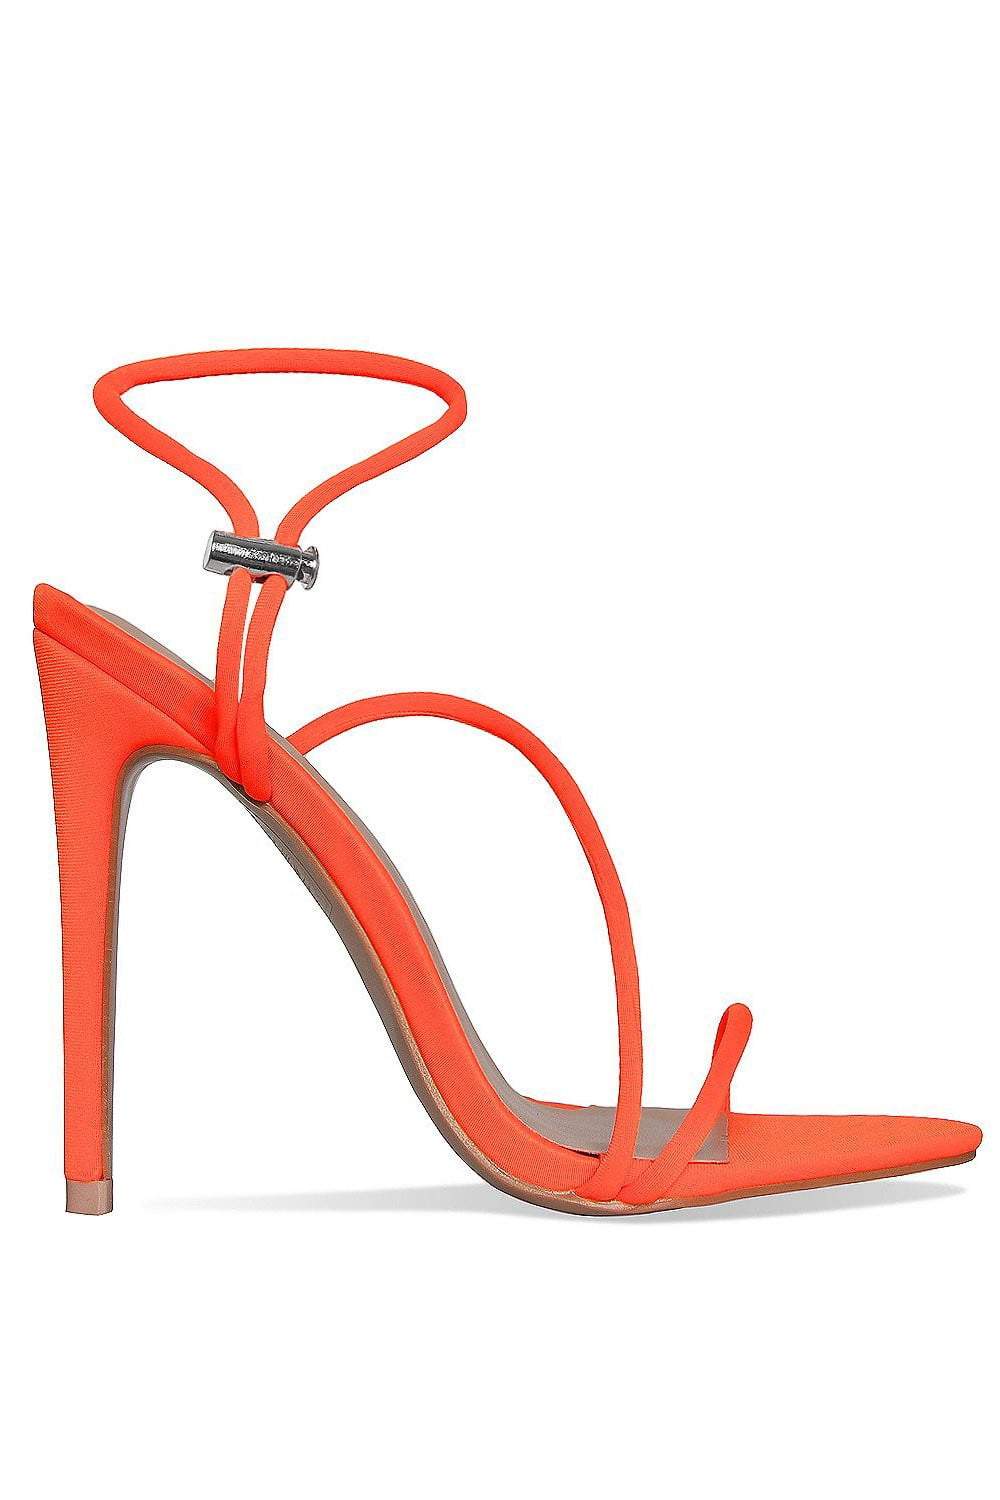 neon orange strappy heels